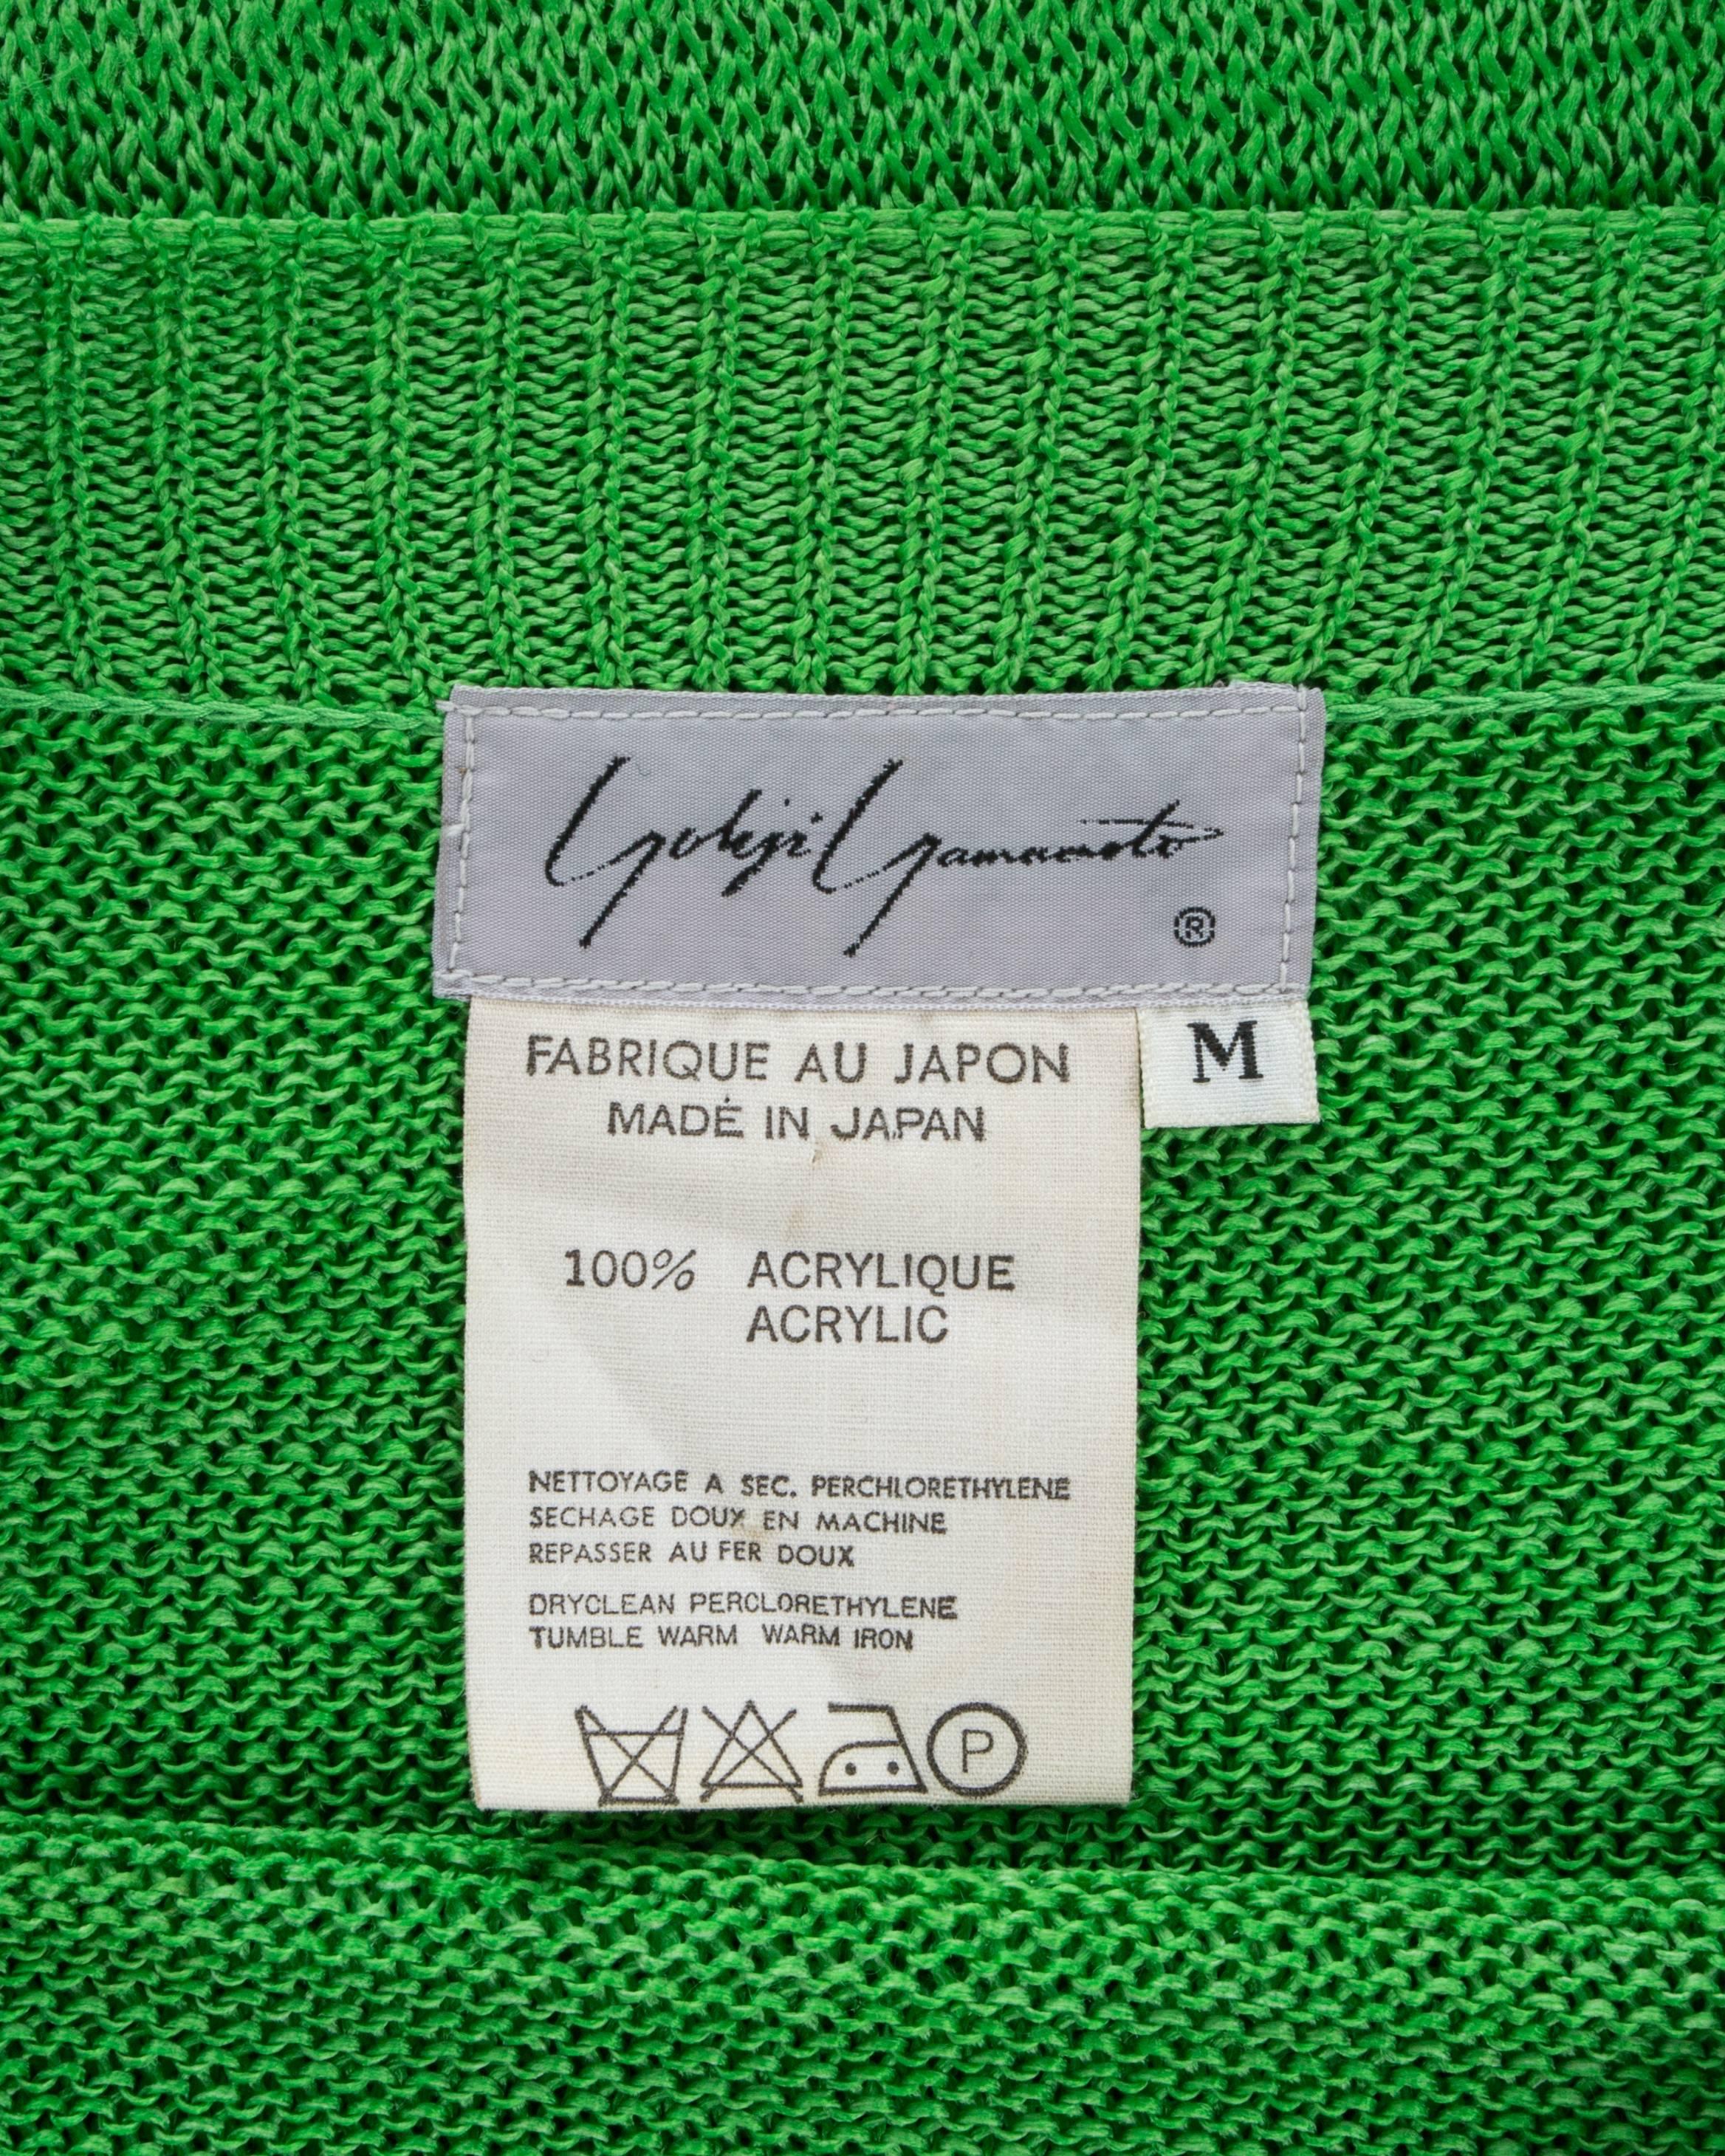 Yohji Yamamoto green acrylic knitted oversized sweater with zippers, A / W 1986 3